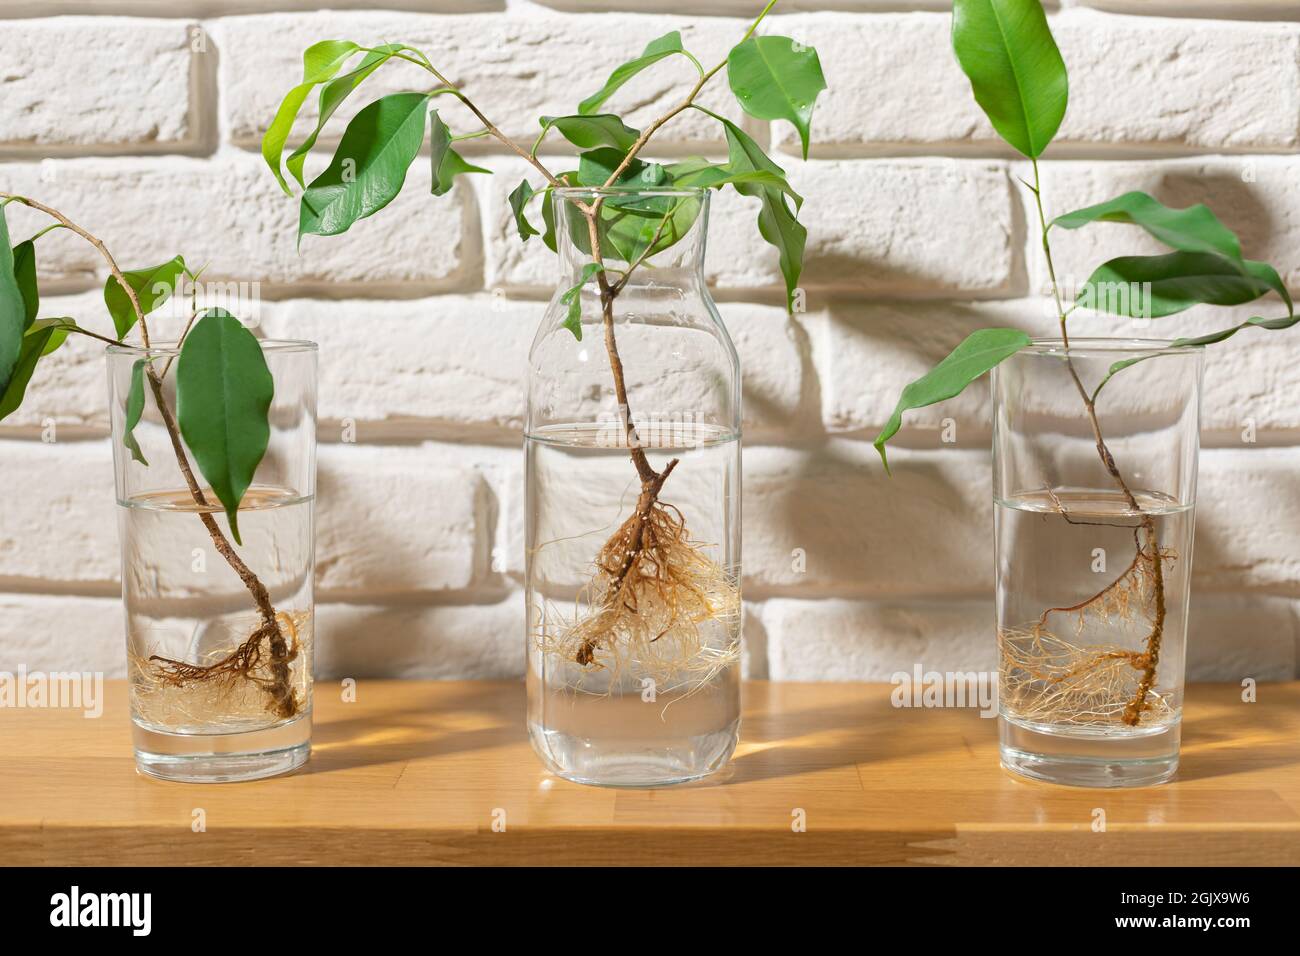 ficus benjamin plantules avec des racines dans des verres d'eau Banque D'Images